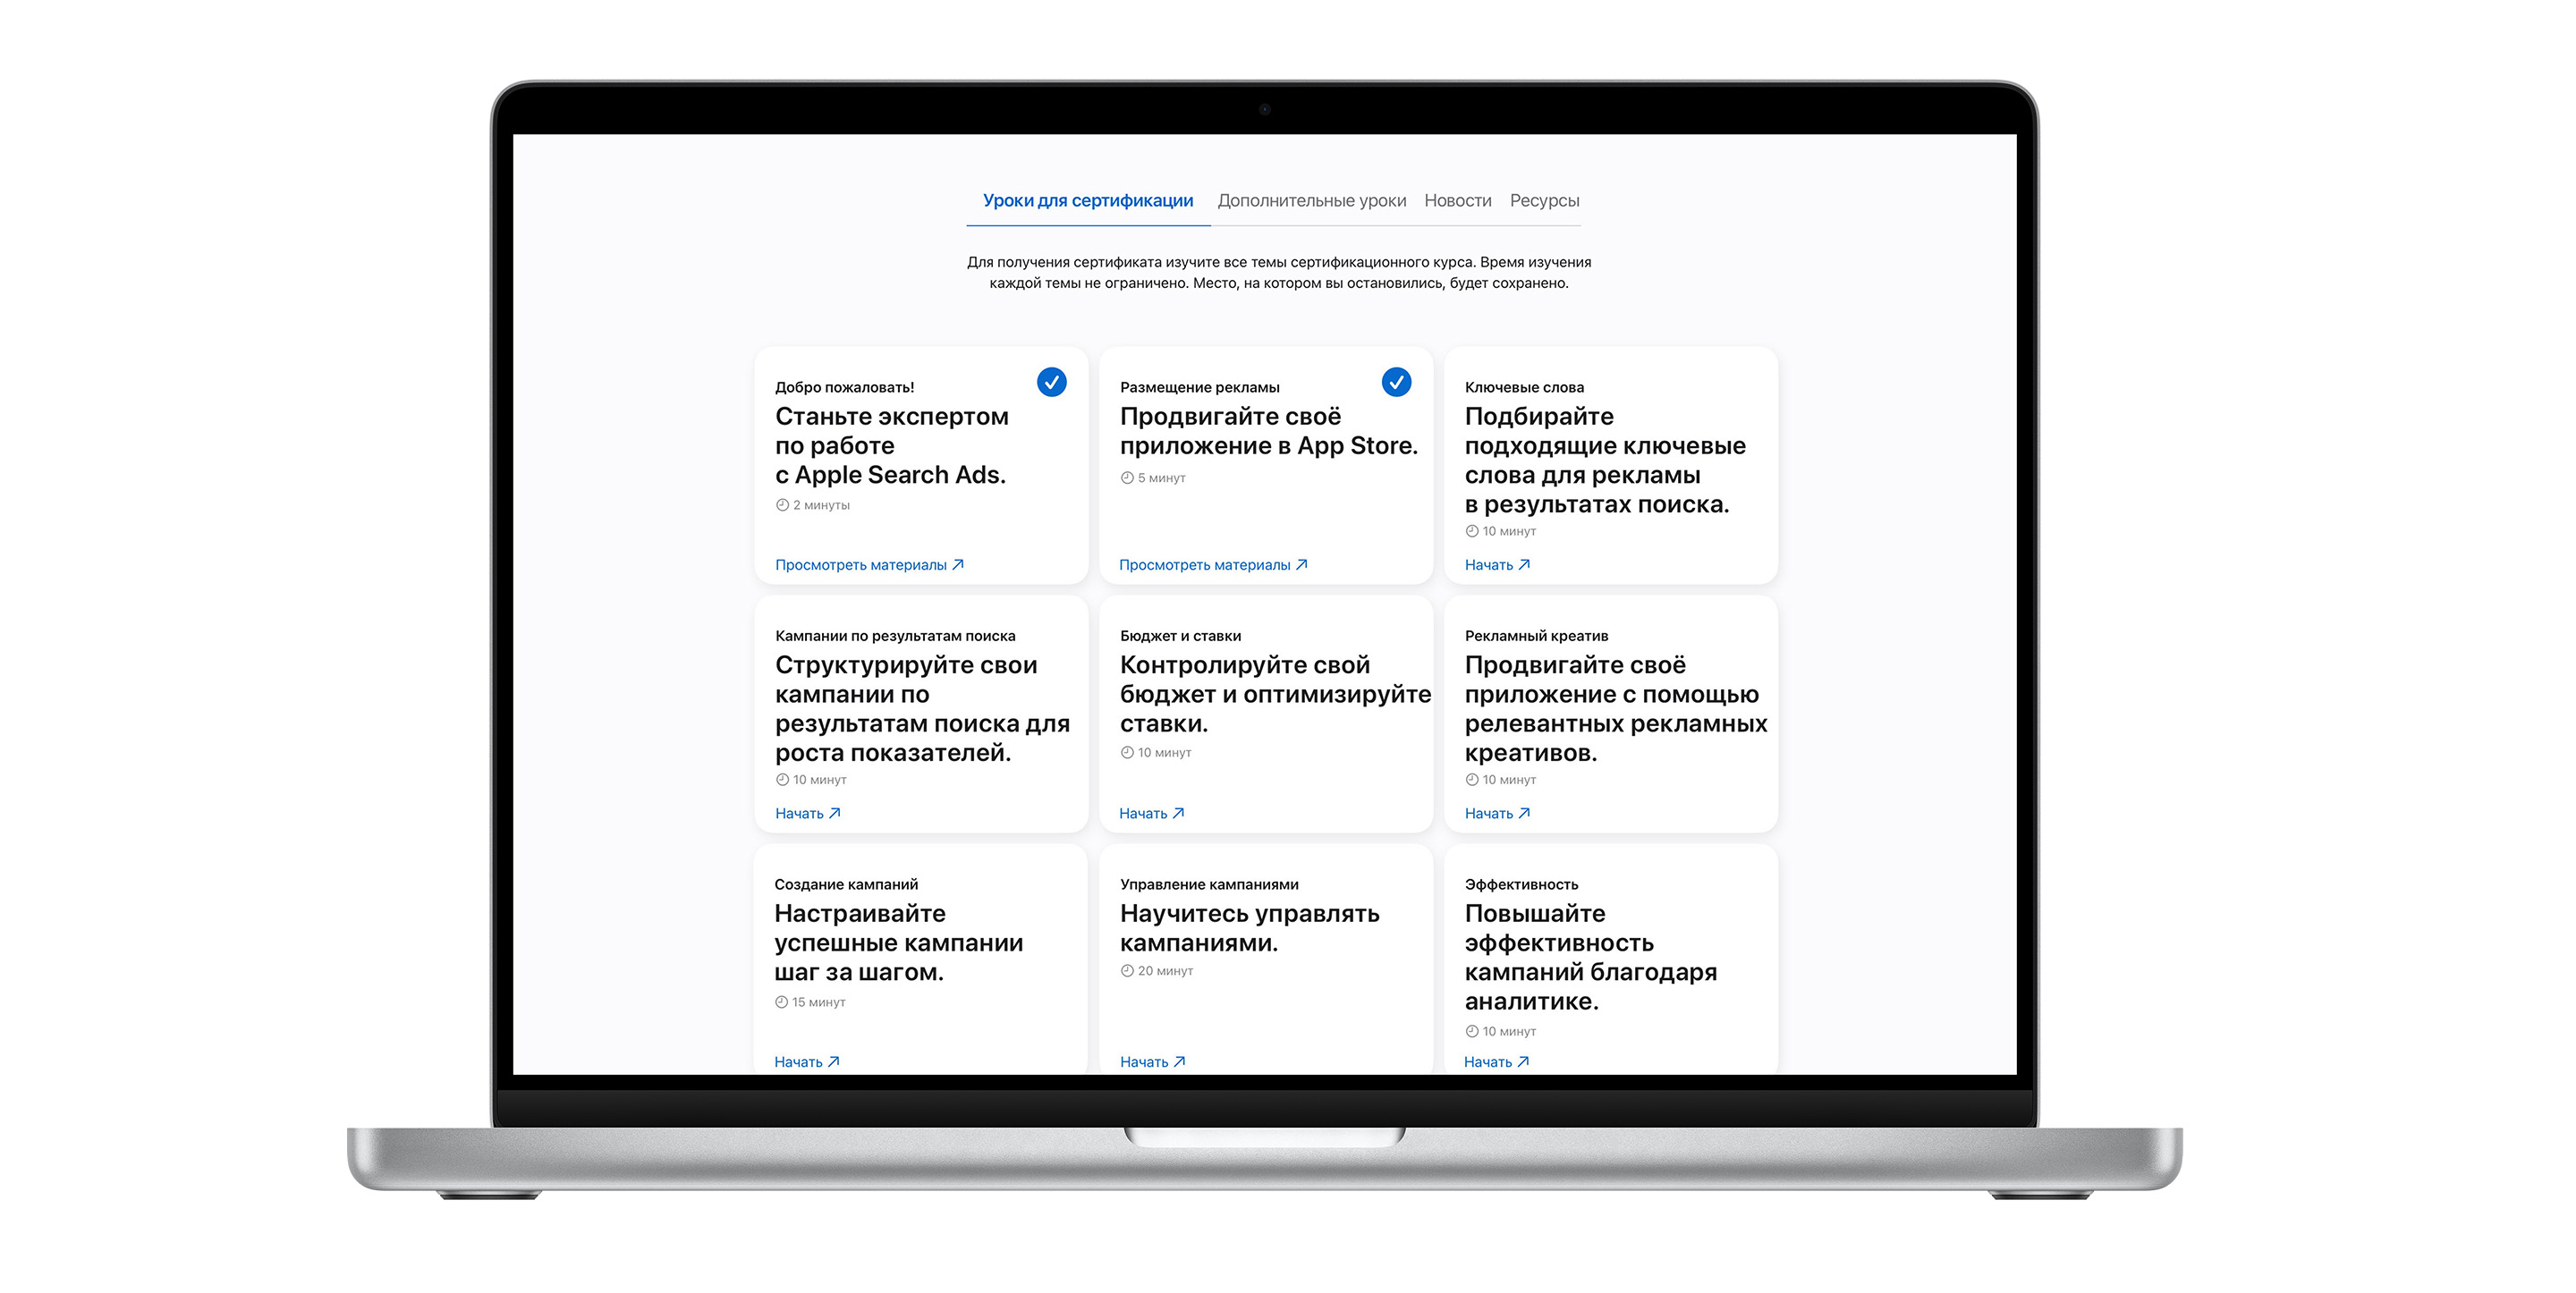 Страница тем сертификационного курса Apple Search Ads, состоящая из девяти модулей. Модули первых двух тем отмечены синими галочками, которые обозначают, что эти темы пройдены.